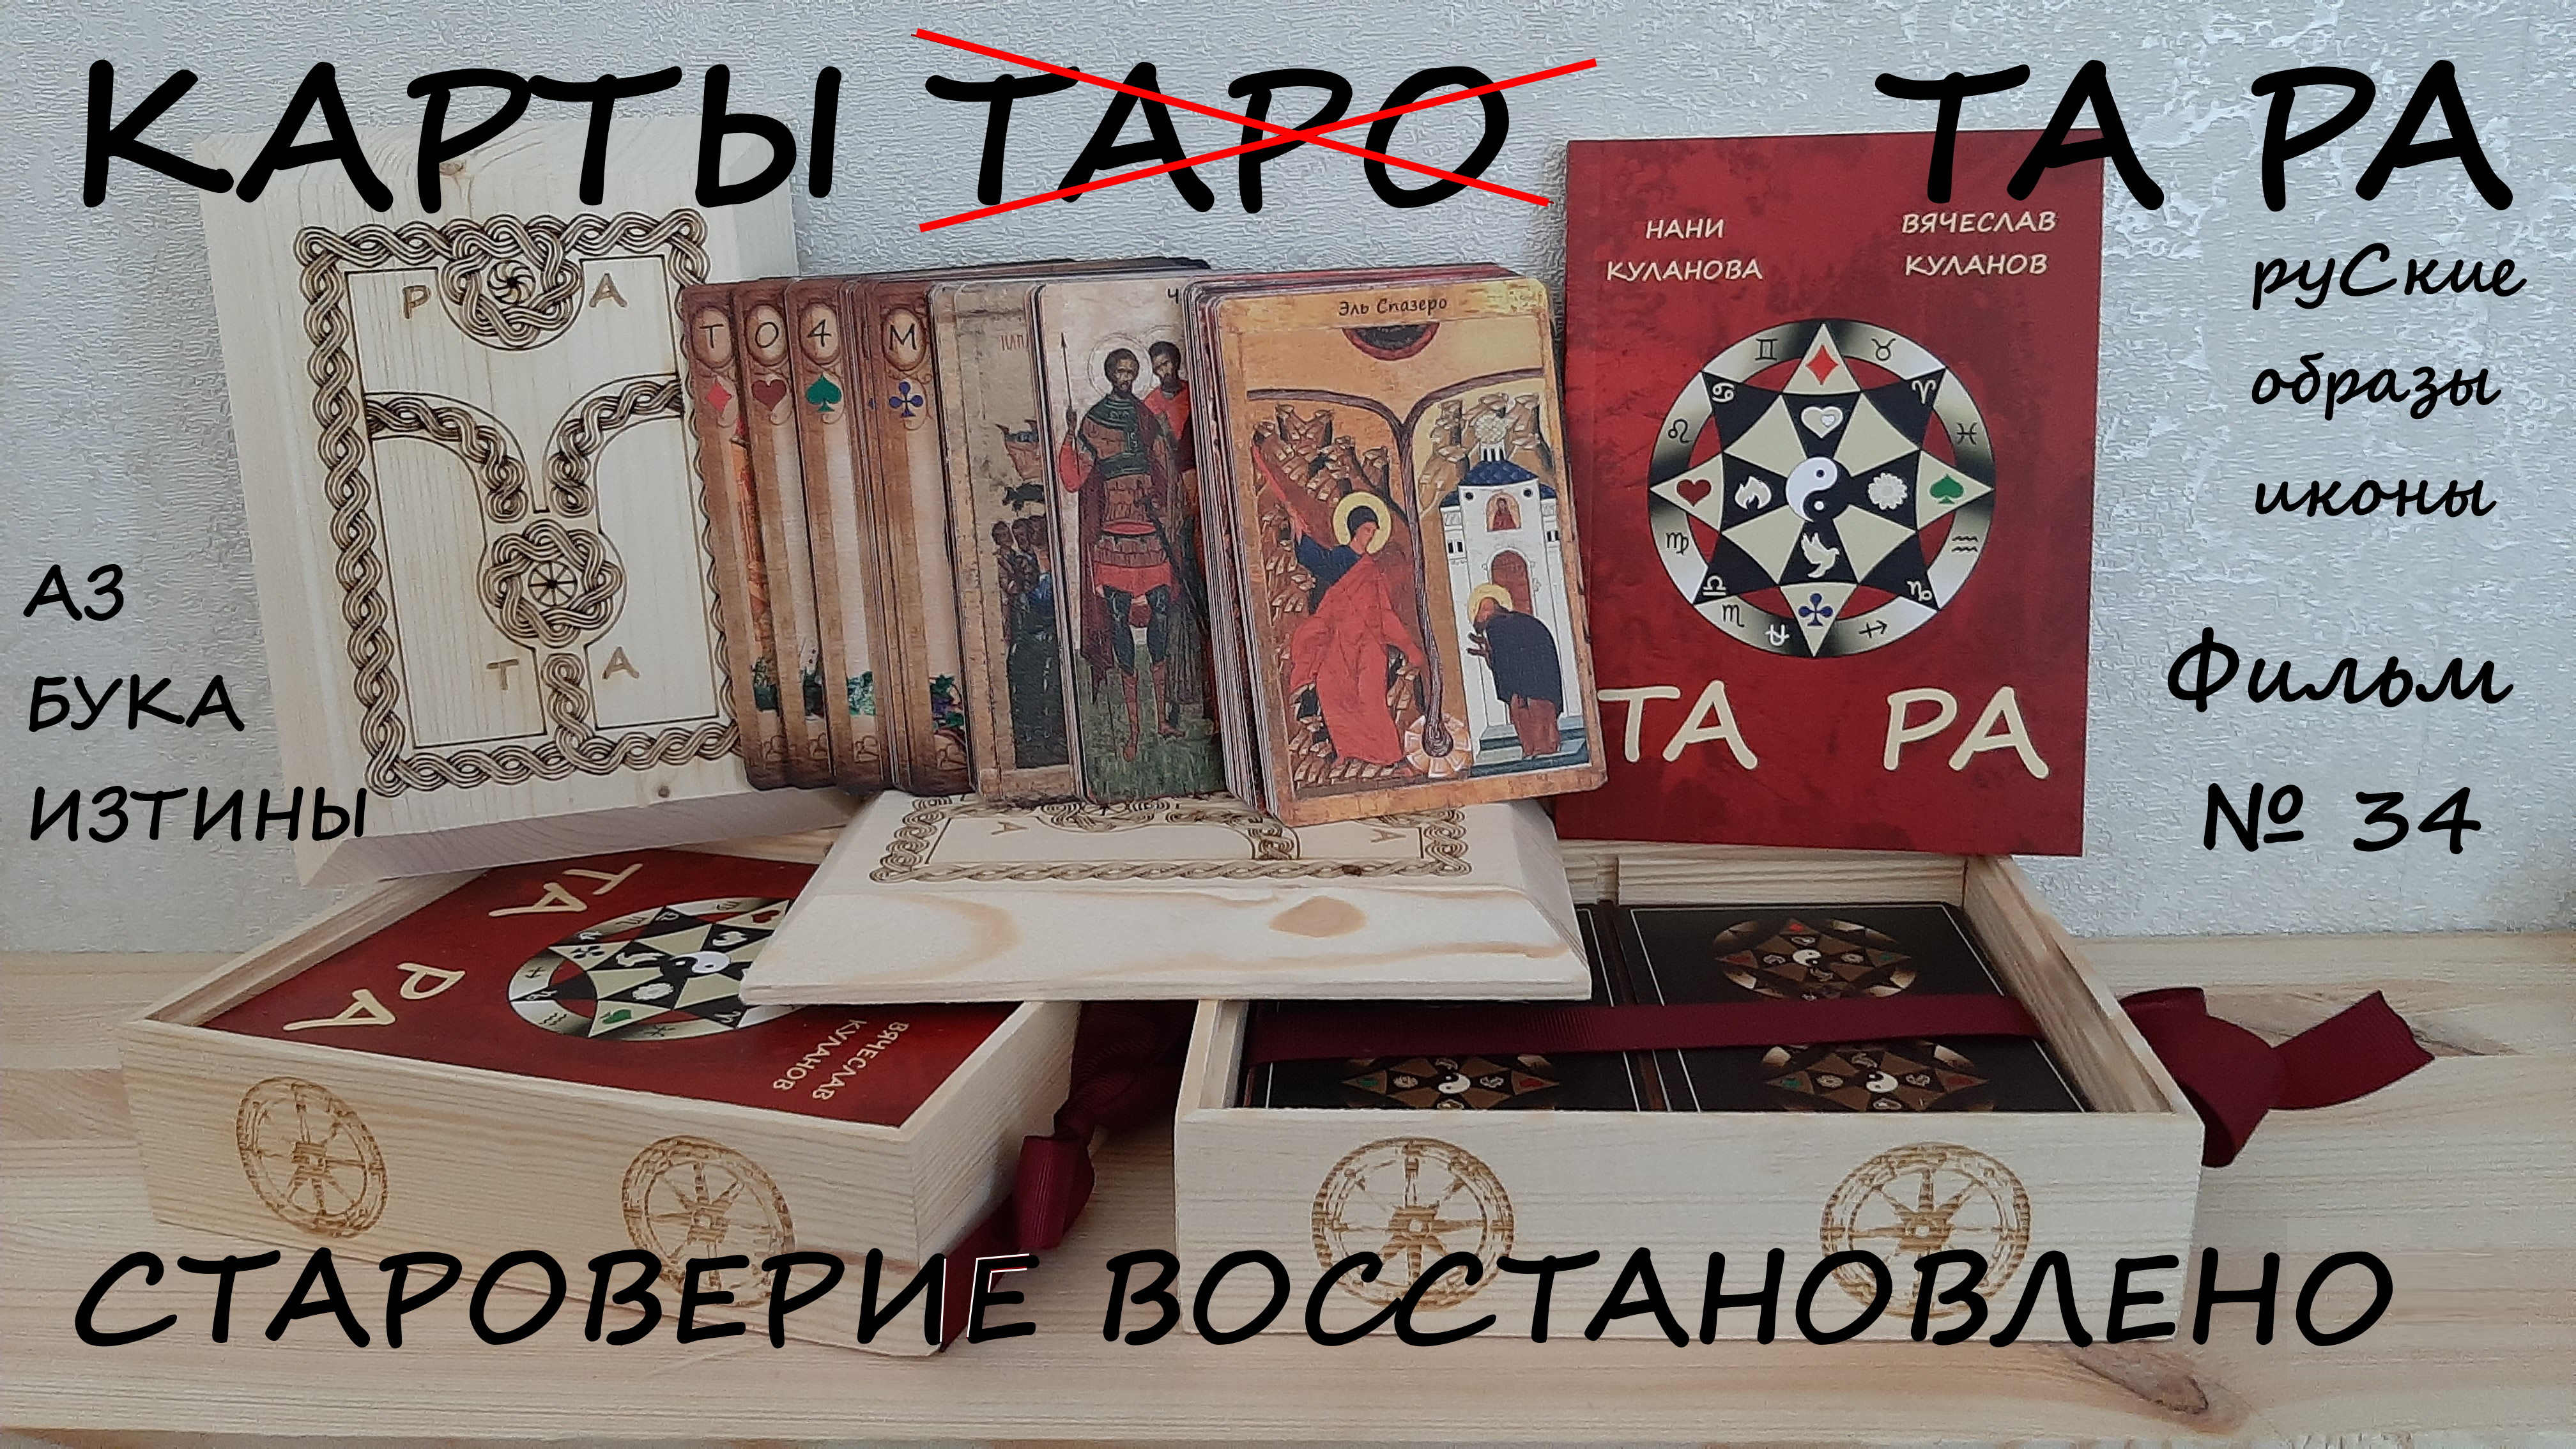 Карты Таро образы икон азбуки Руси АЗ БУКА ИЗТИНЫ РУСЬ 34